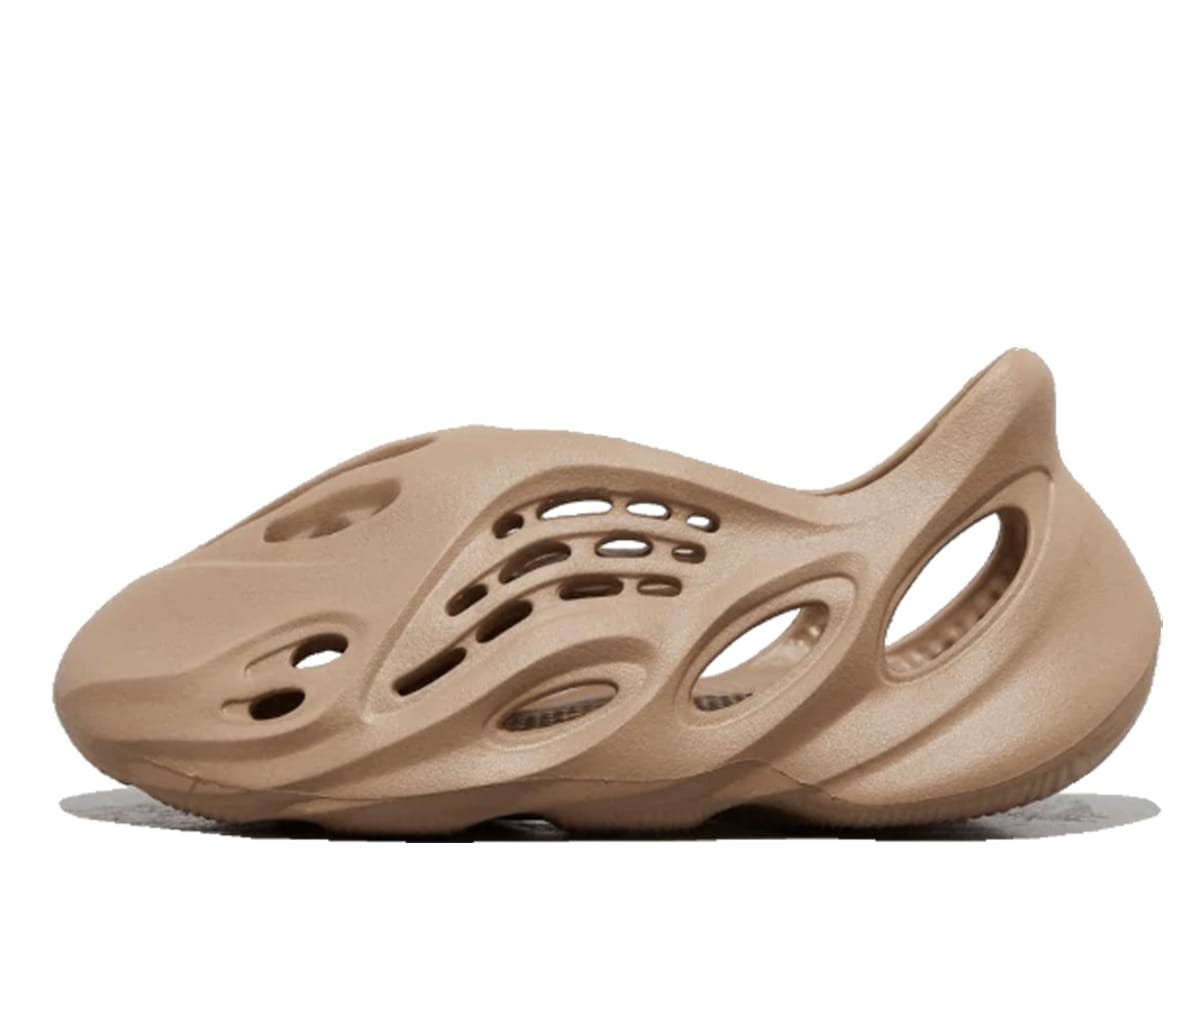 Sneakerek és cipők adidas Yeezy Yeezy Foam Runner "Mist" Barna | GV6774, 0